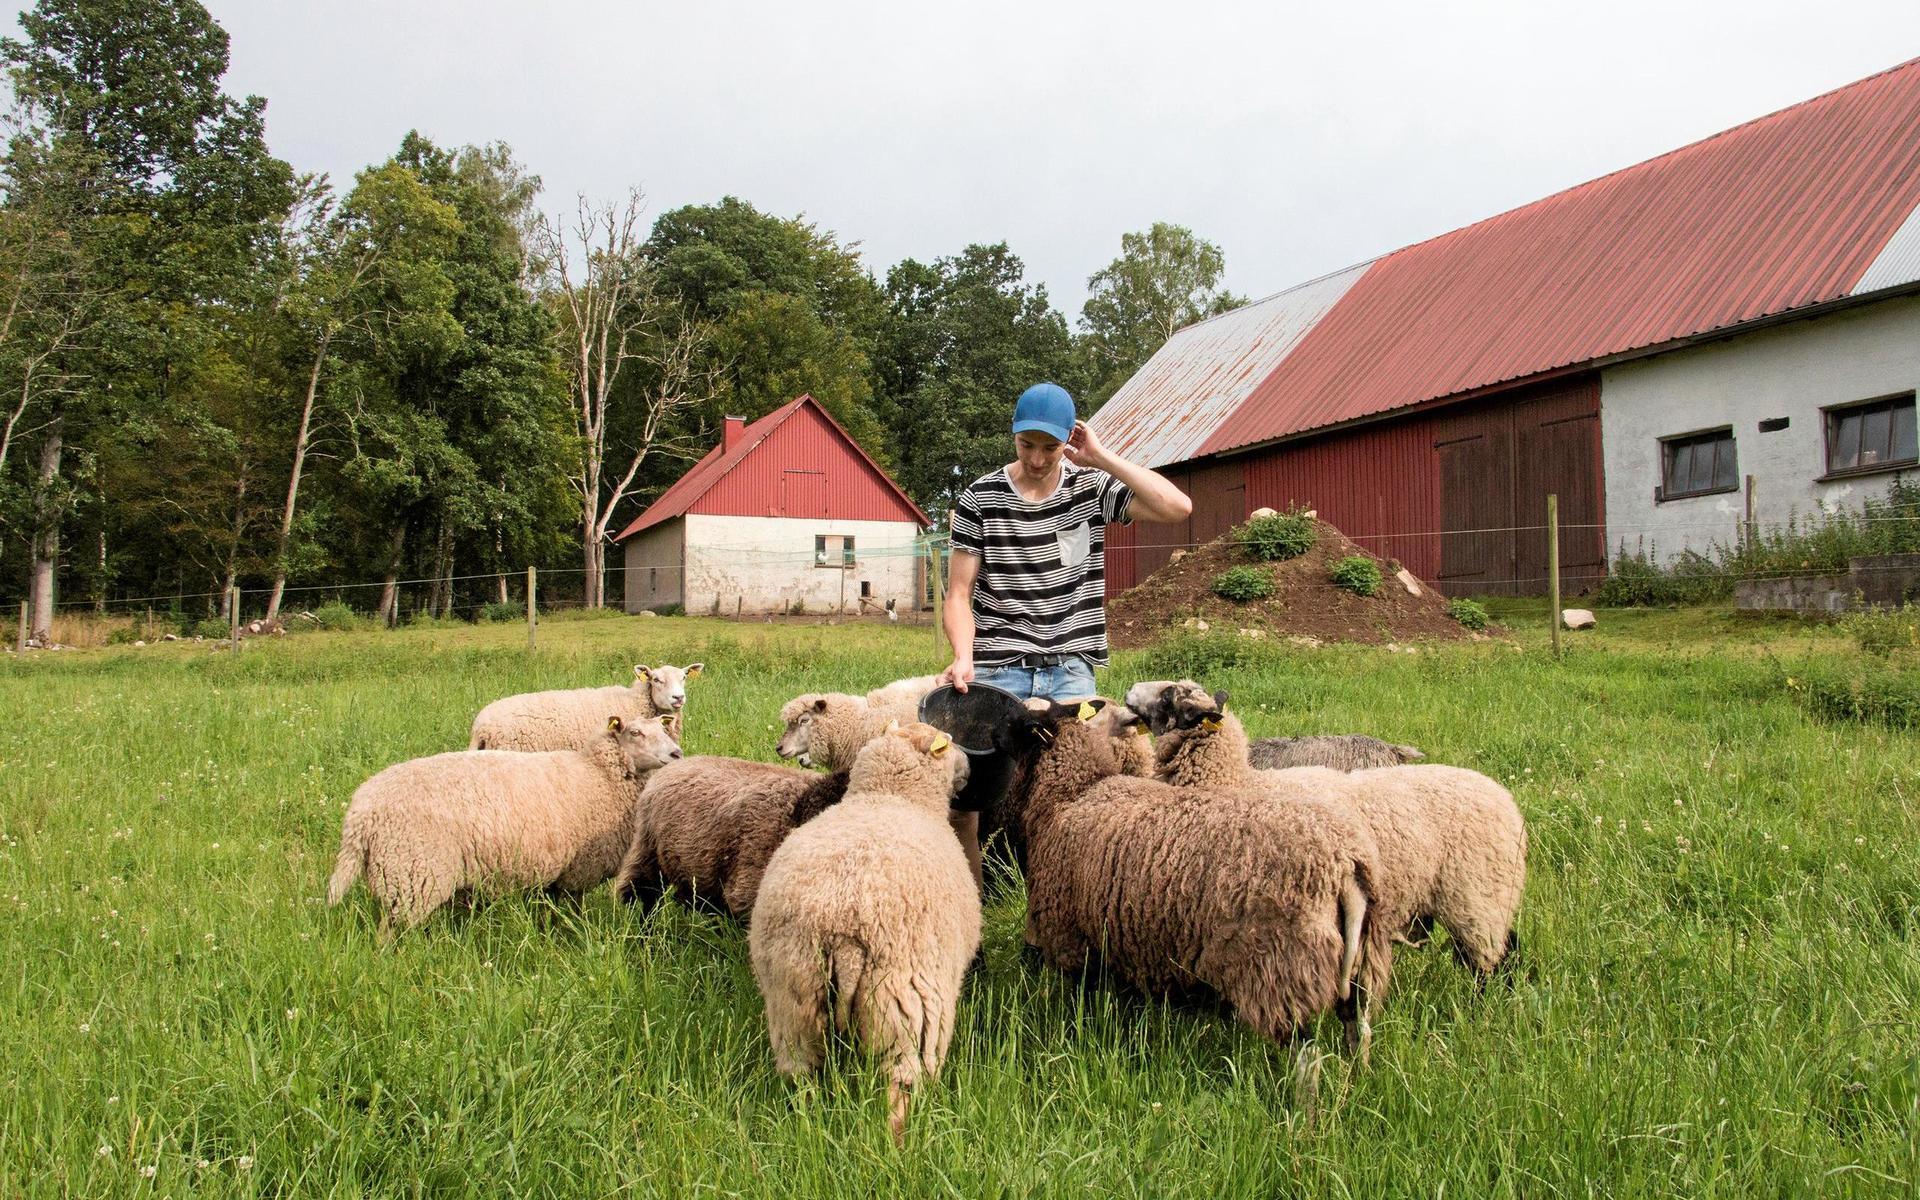 Anton Blomster är van vid får, eftersom hans föräldrar har haft får. De är lättare att sköta än större djur som dikor, berättar han.